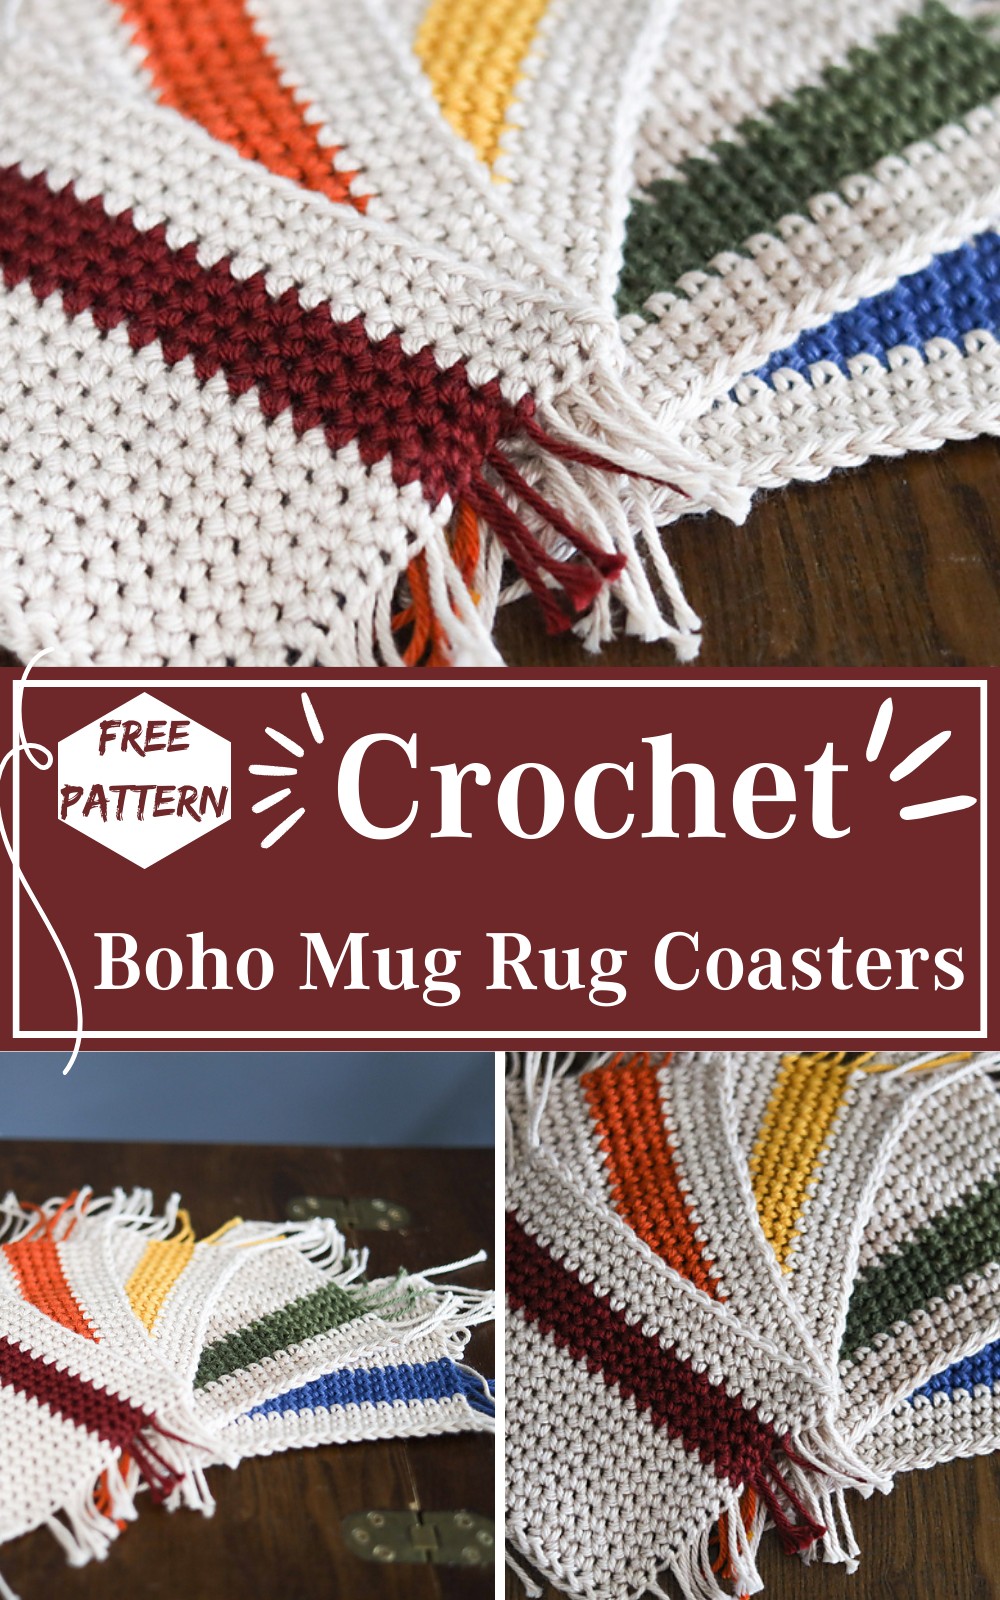 Crochet Boho Mug Rug Coasters